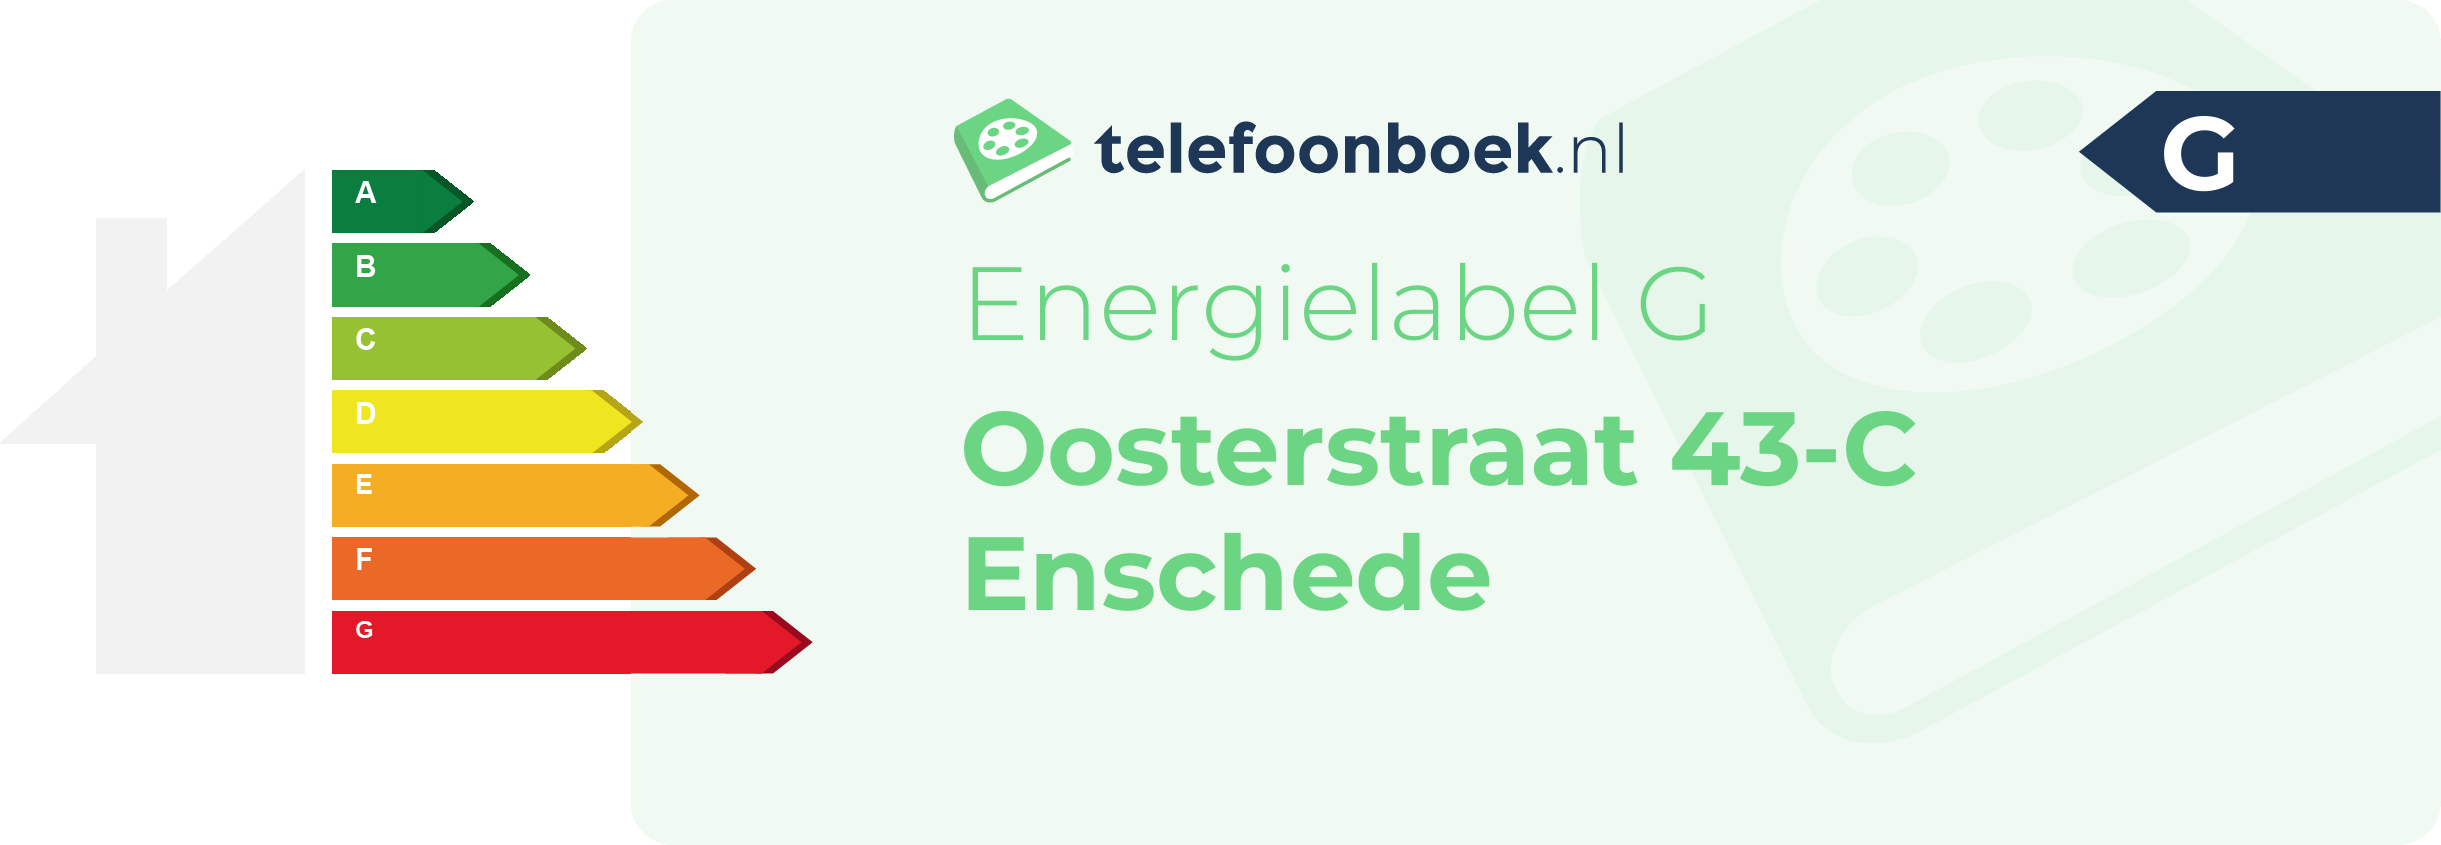 Energielabel Oosterstraat 43-C Enschede